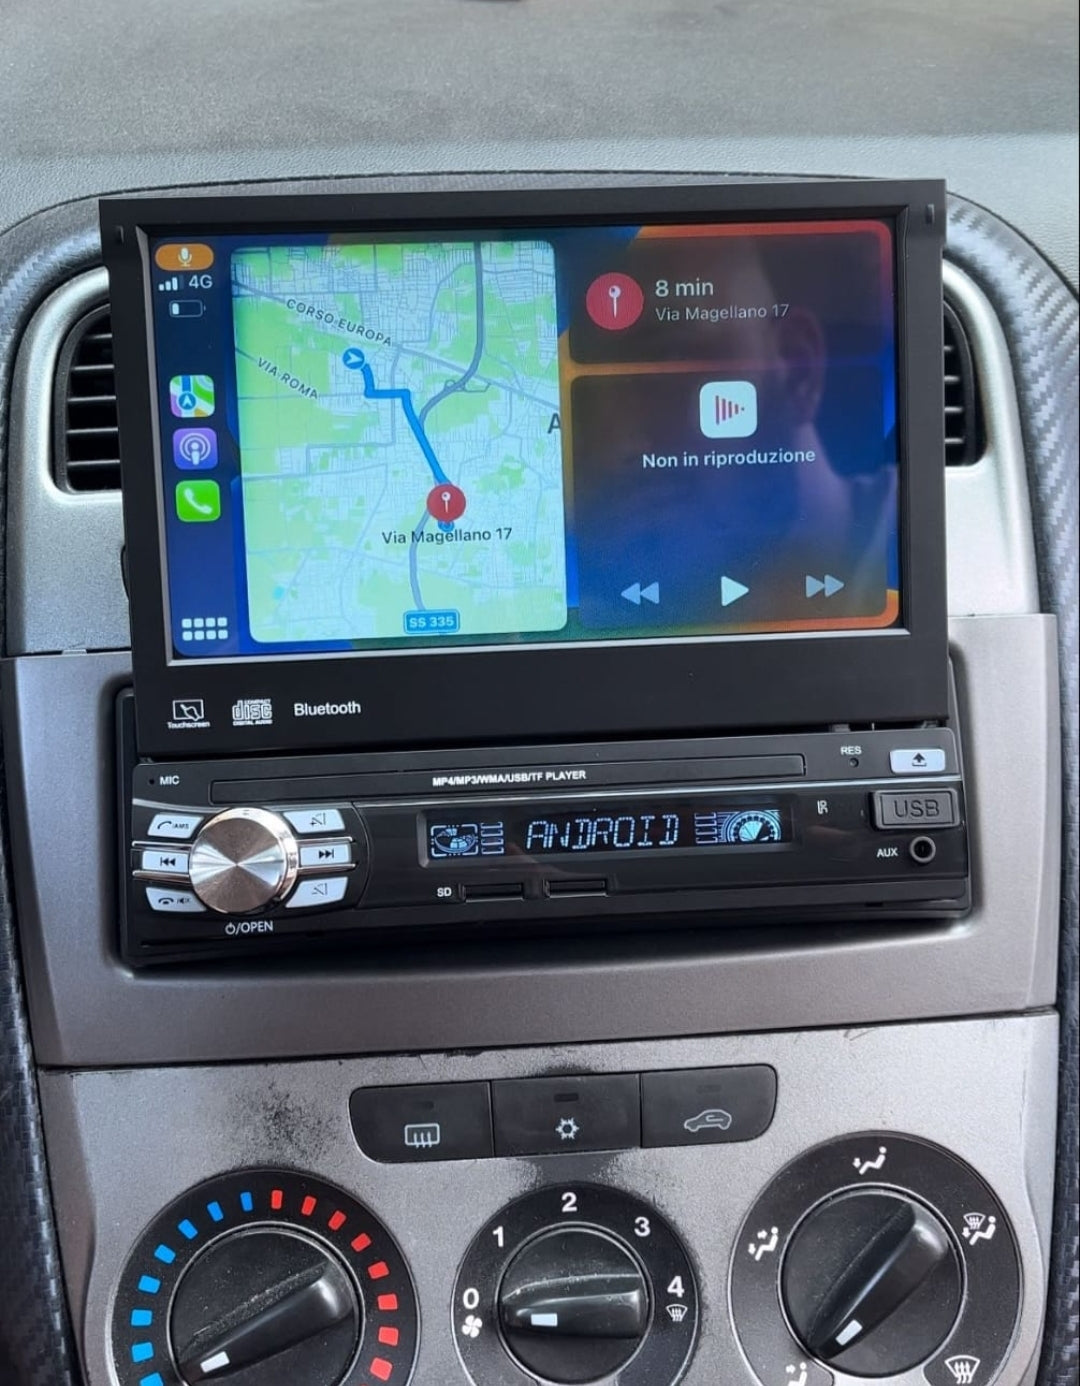 Autoradio motorisé UNIVERSEL [ANDROID] - 1 Din, stéréo avec GPS, WiFi, –  Ferraro Store